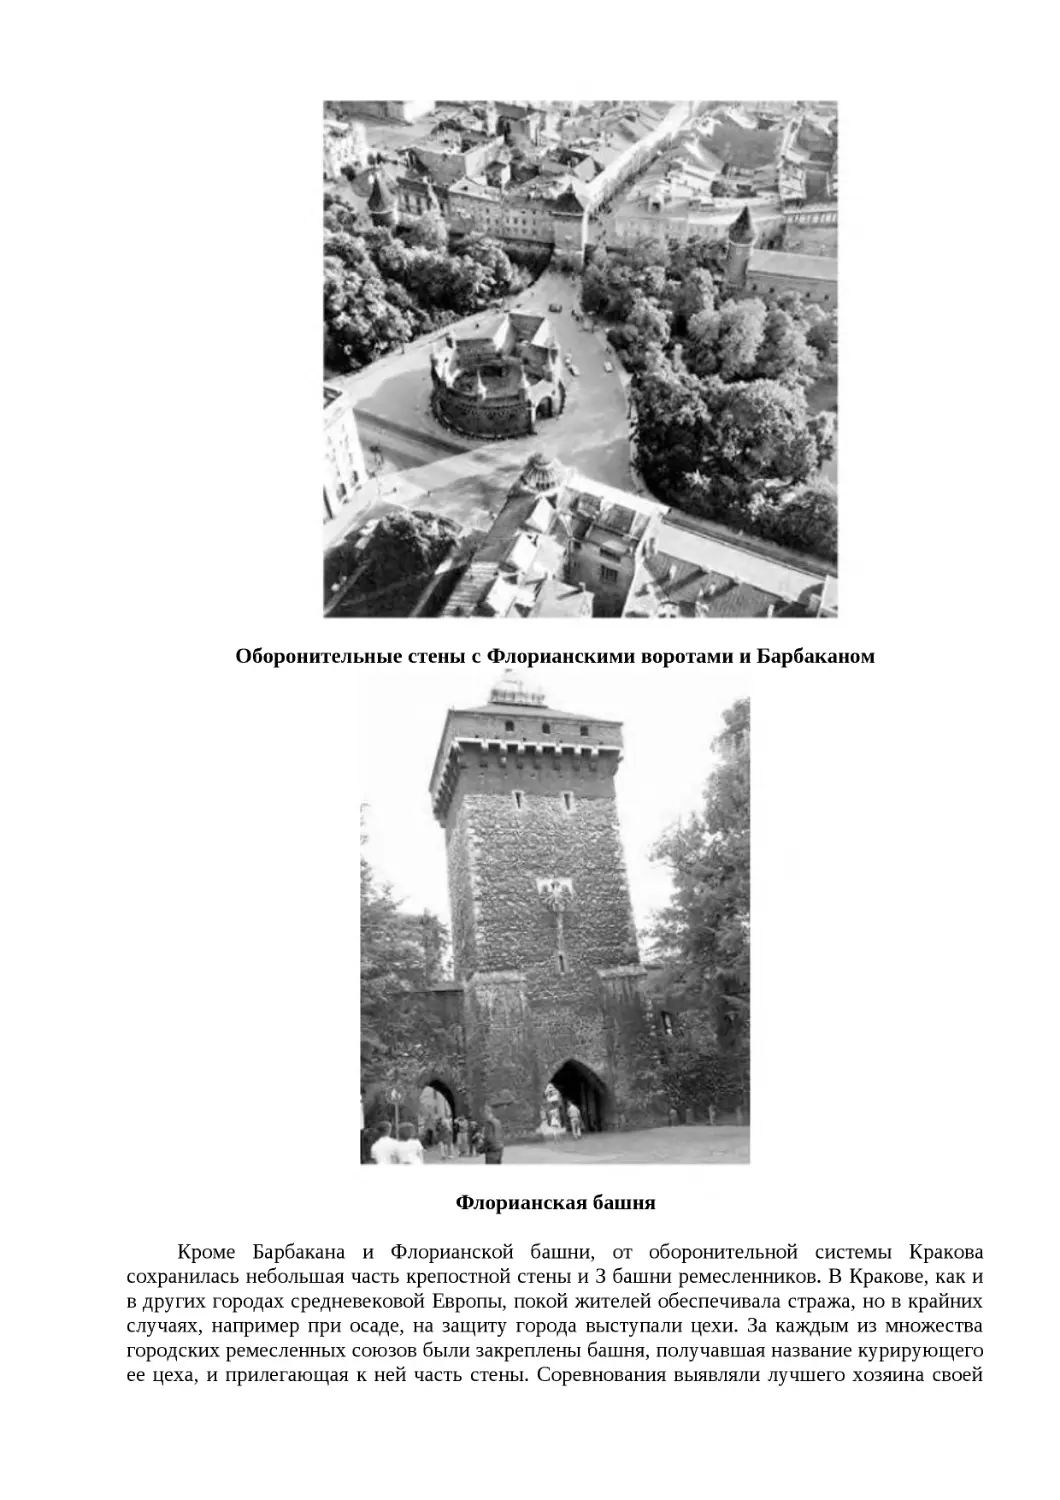 ﻿Оборонительные стены с Флорианскими воротами и Барбакано
"
﻿Флорианская башн